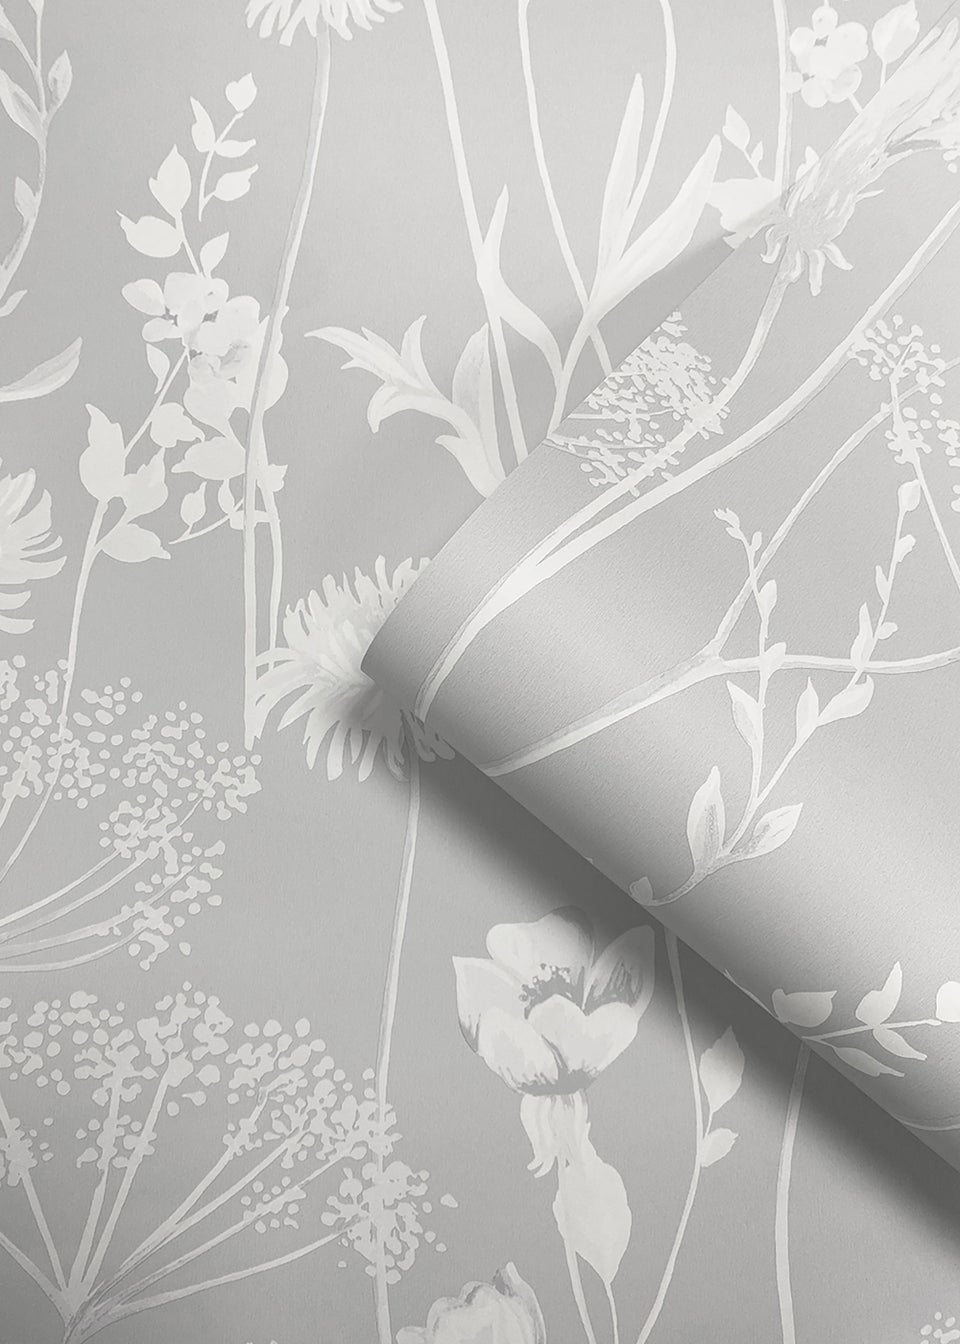 Floral Wallpaper & Flower Wall Murals | Wallsauce CA